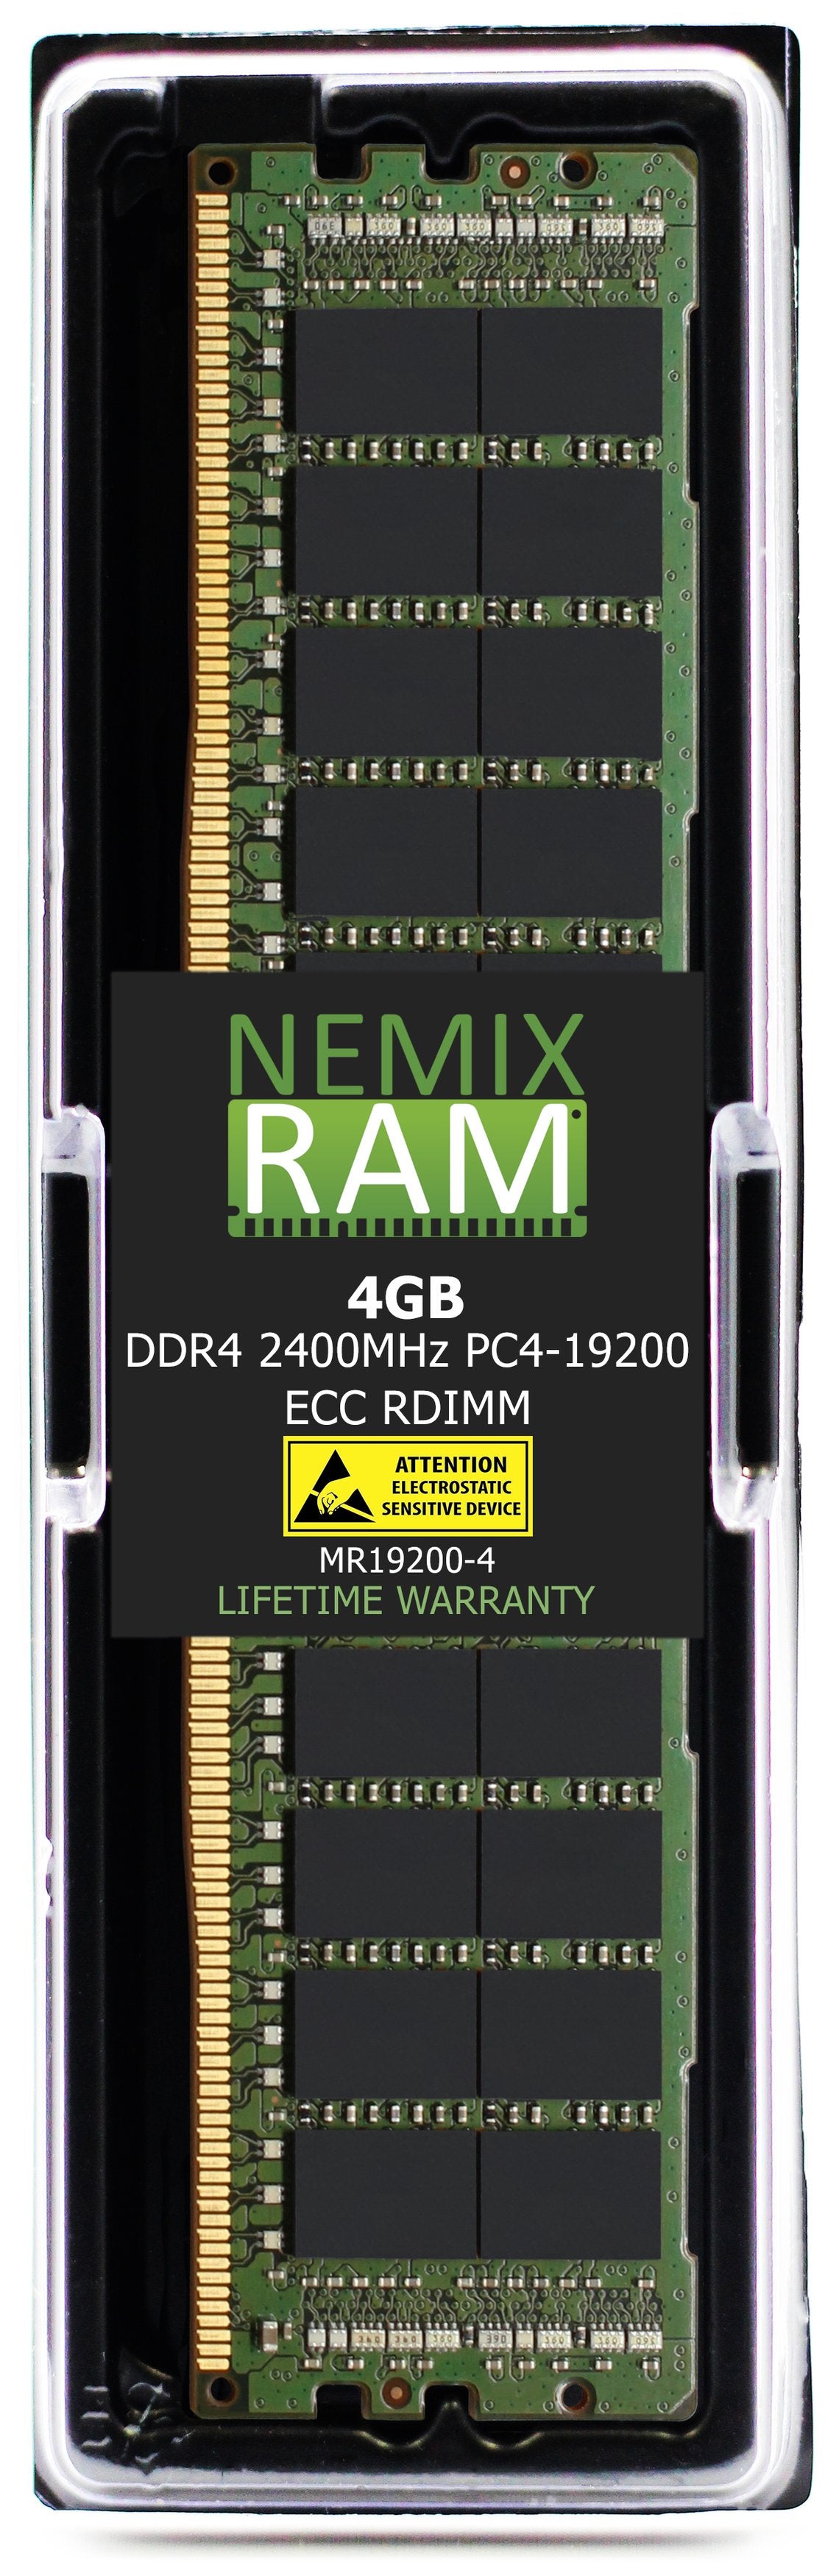 Hynix HMA41GR7AFR4N-UH 8GB DDR4 2400MHZ PC4-19200 RDIMM Compatible Memory Module